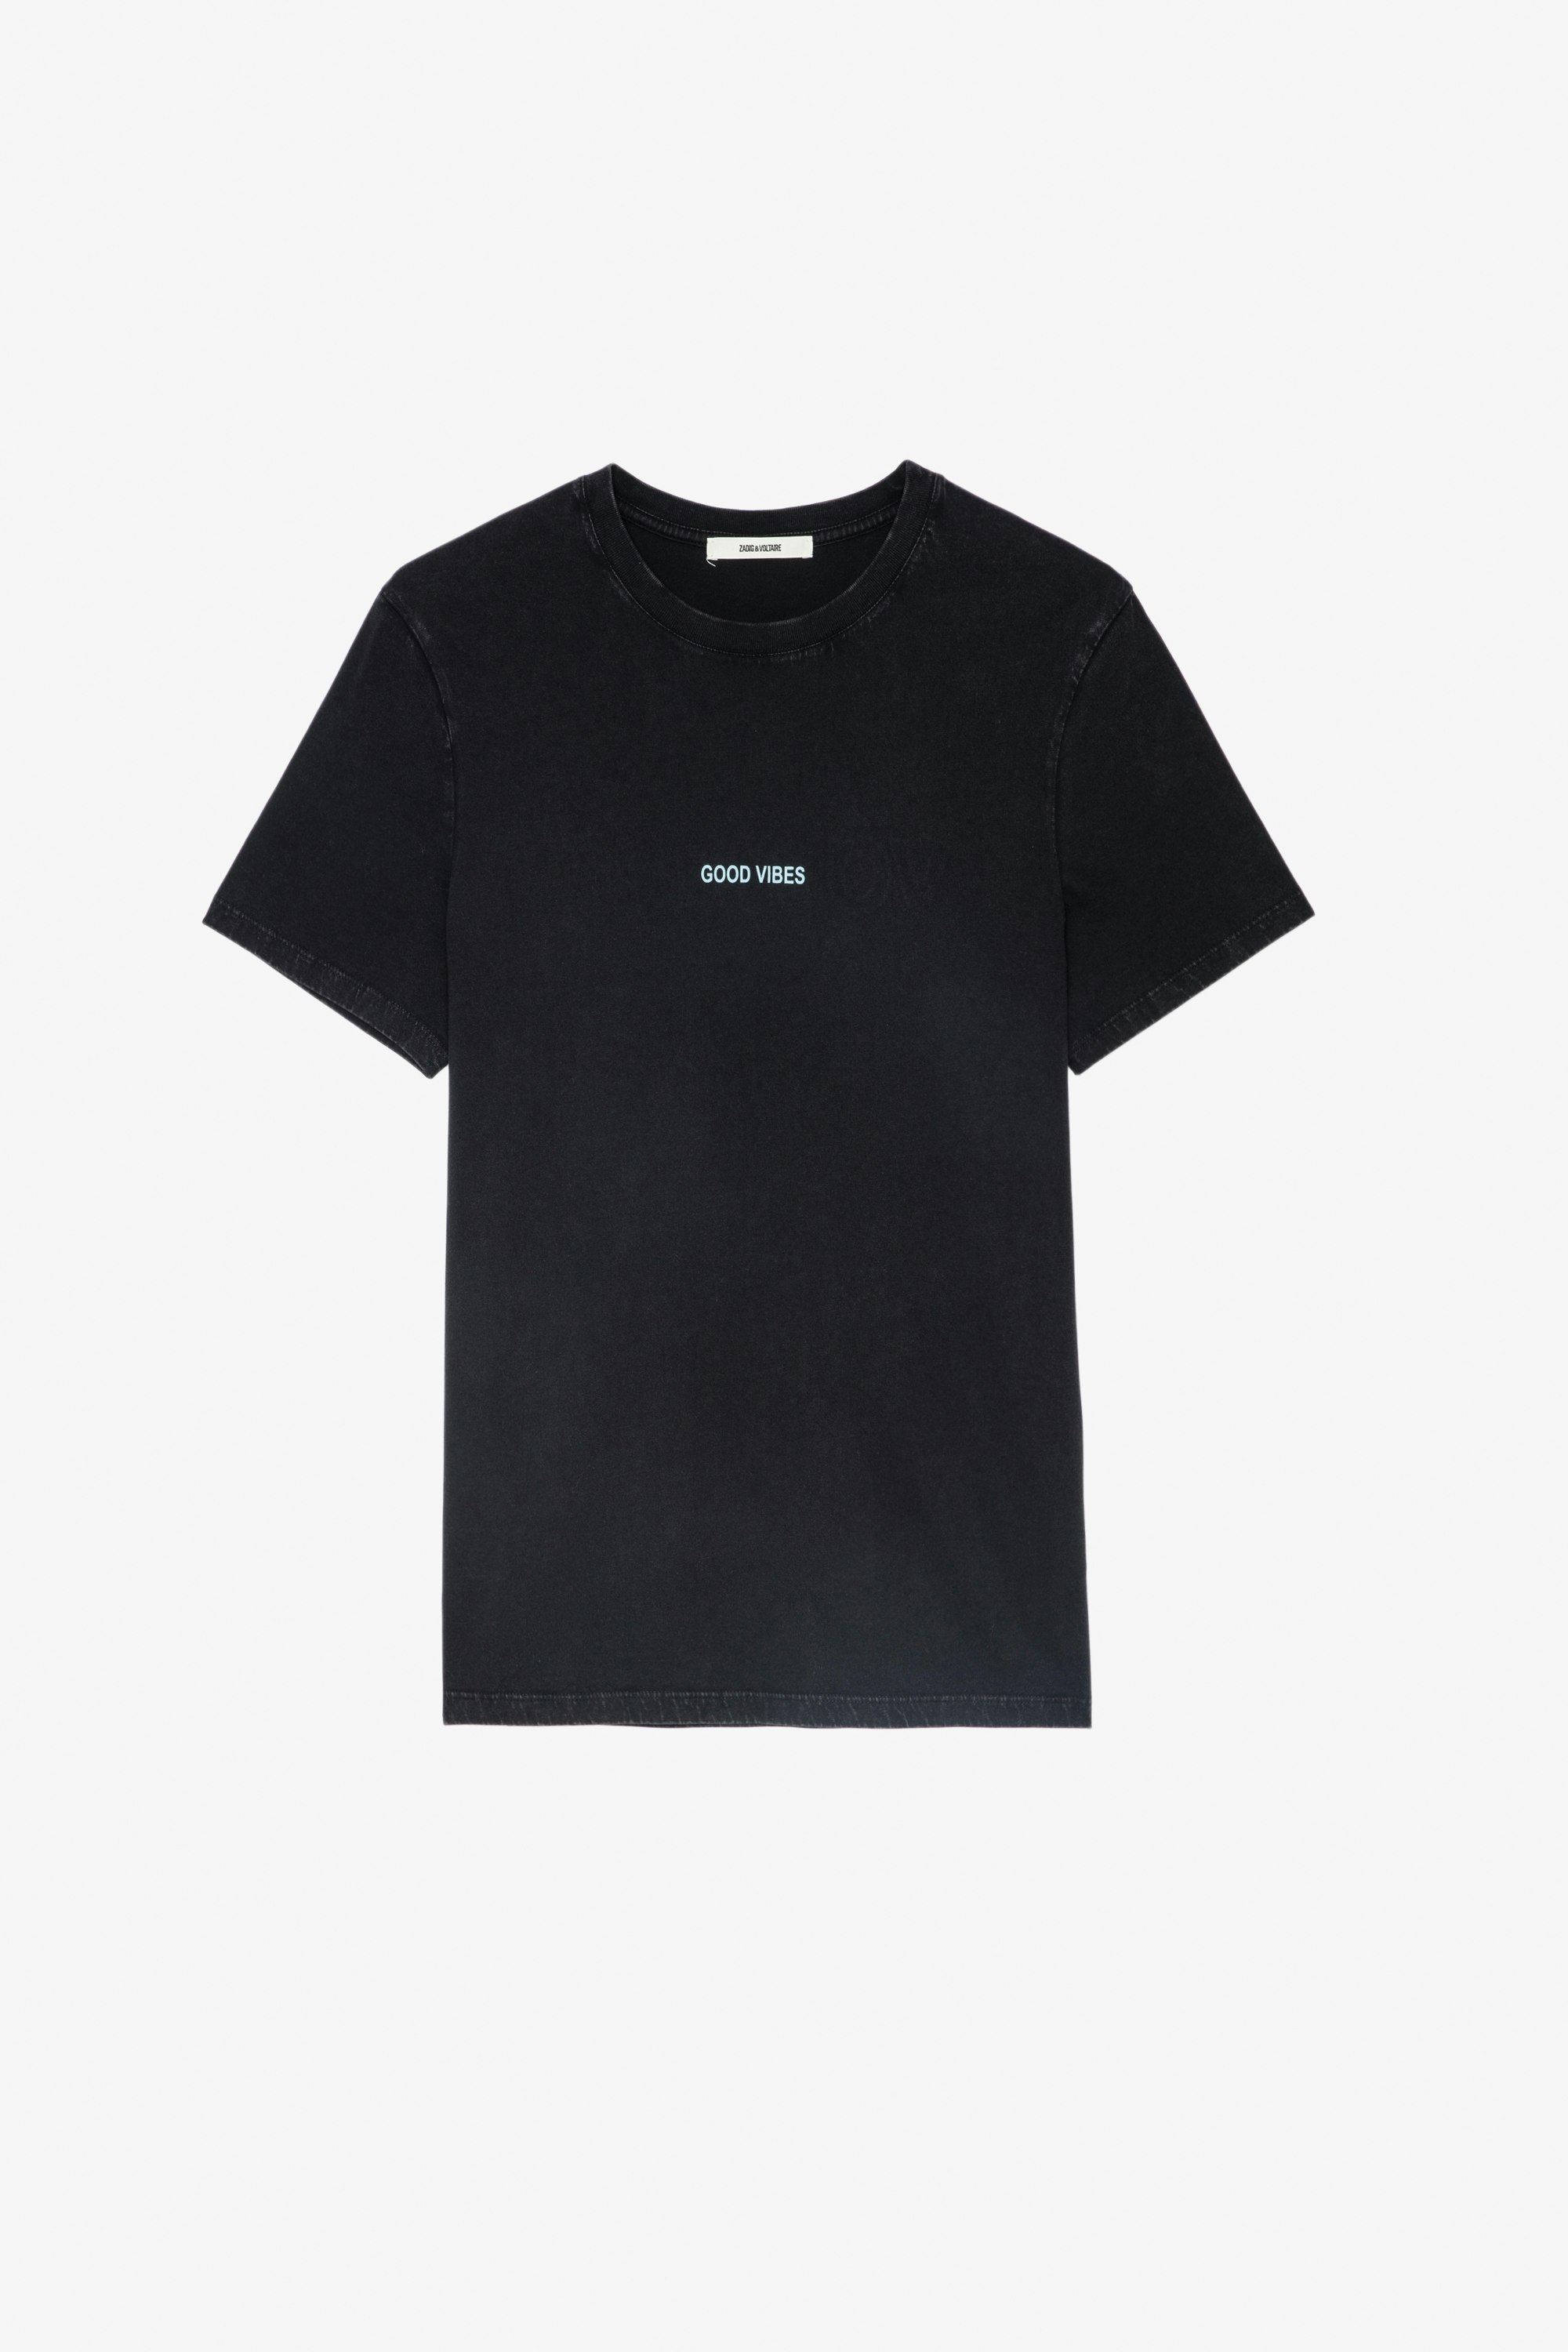 Ted T-Shirt ブラックコットンTシャツ フロントに「Good Vibes」のメッセージ、バックにウィングとHappy Face Zadig